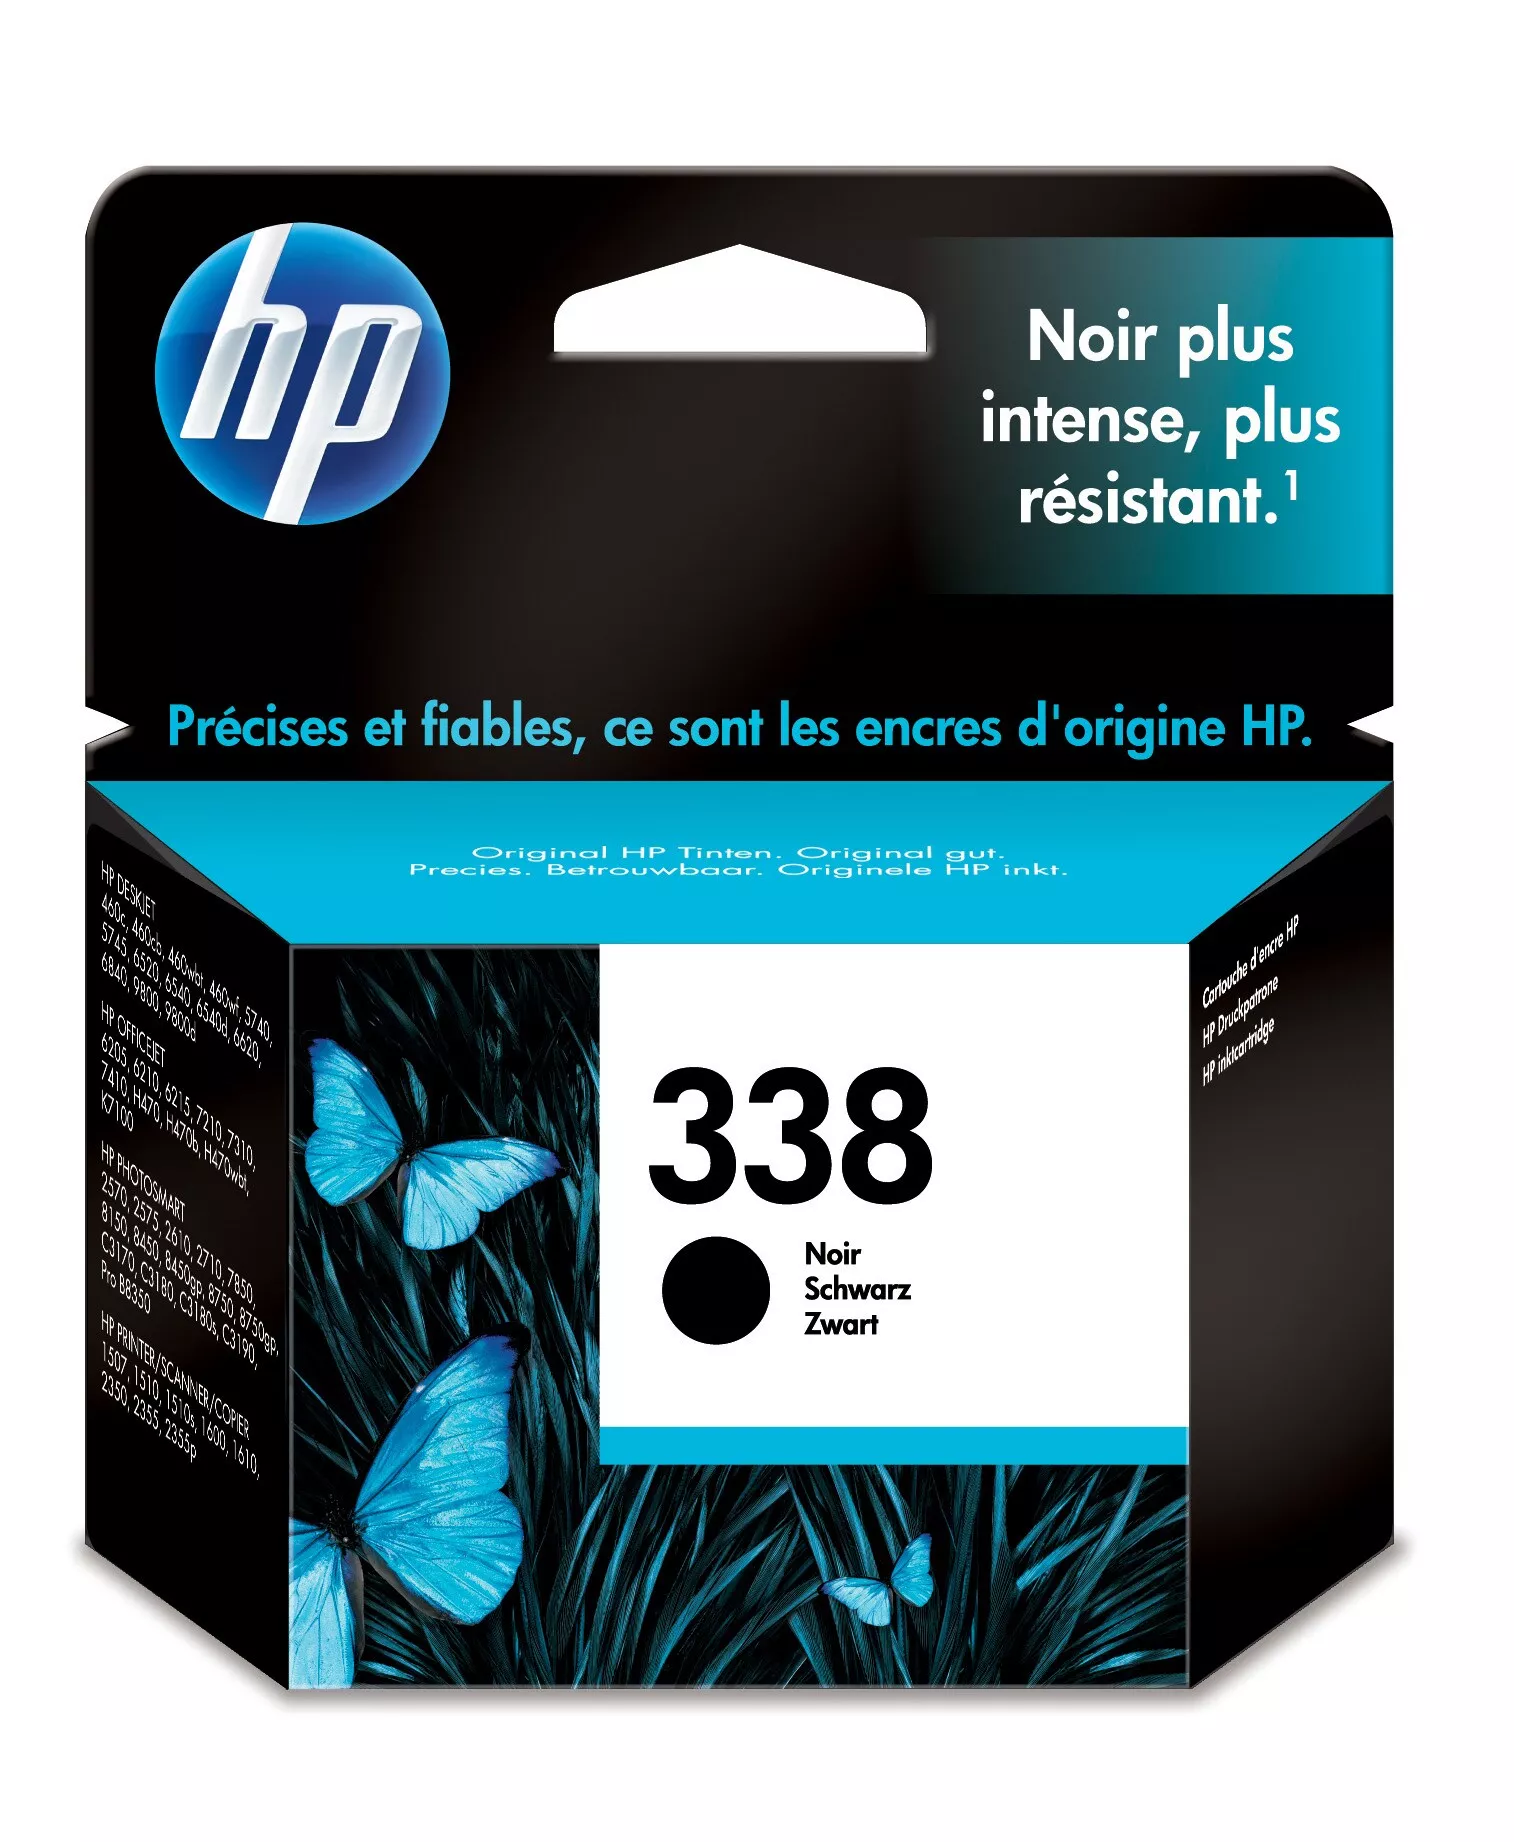 Vente HP 338 original Ink cartridge C8765EE UUS black HP au meilleur prix - visuel 2